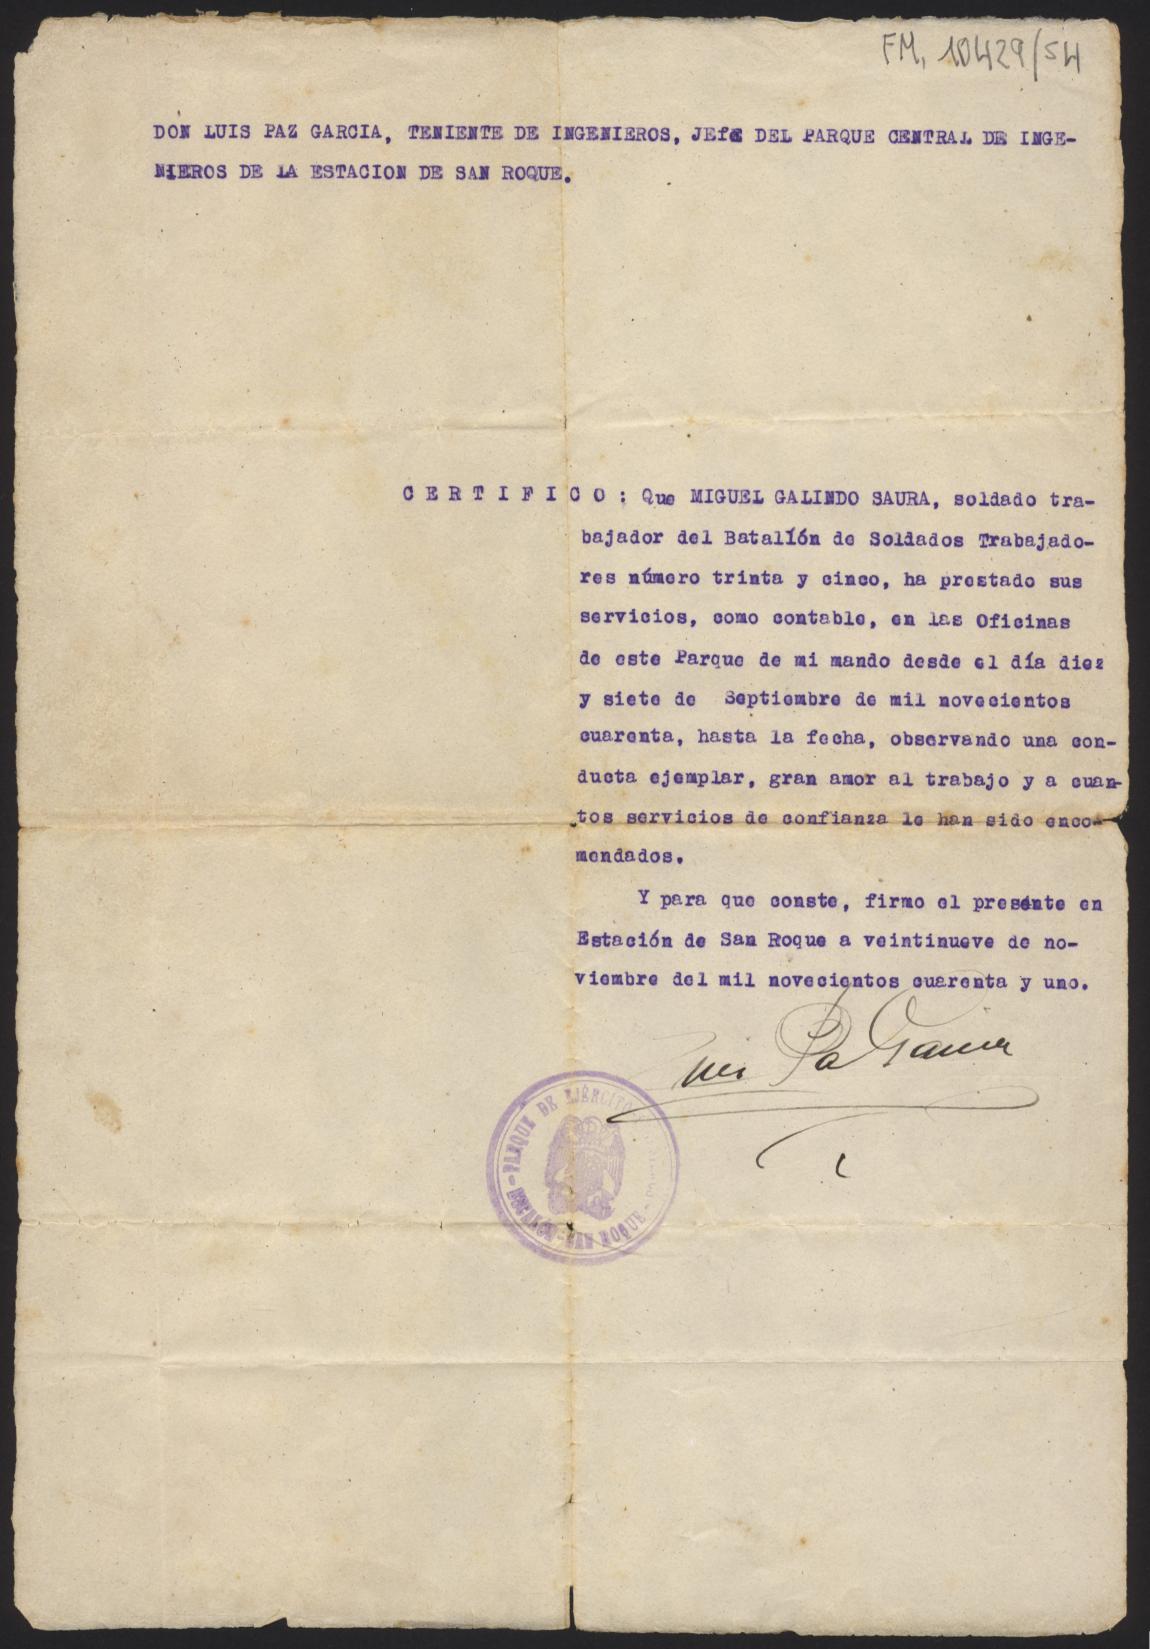 Certificado de buena conducta del soldado trabajador Miguel Galindo, emitido Luis Paz García, jefe del Parque de Ingenieros de San Roque.